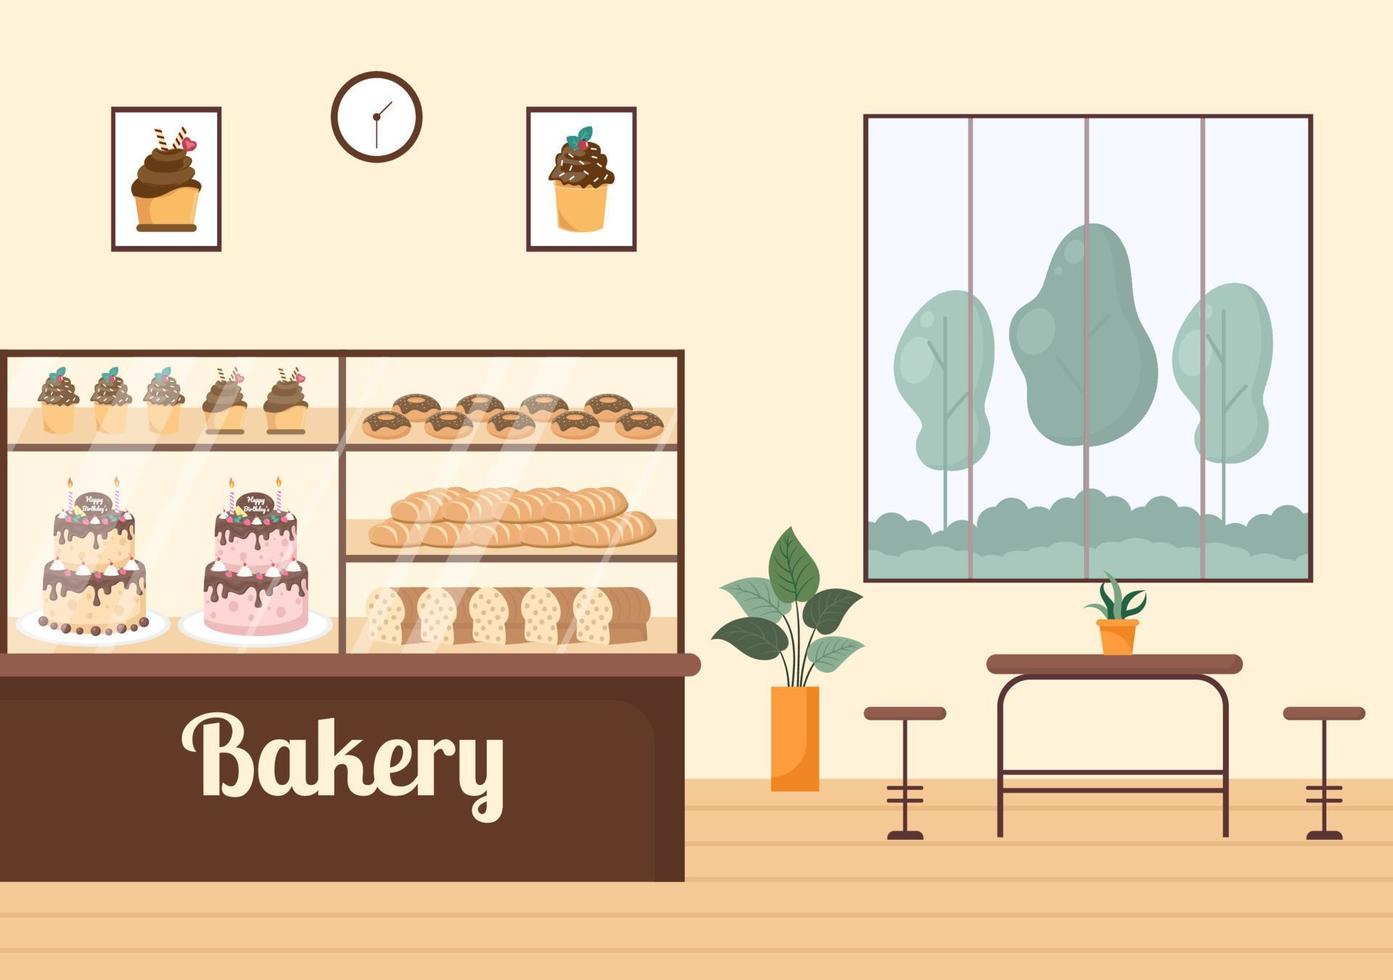 bâtiment de boulangerie qui vend divers types de pain tels que le pain blanc, la pâtisserie et d'autres tous cuits sur fond plat pour l'illustration de l'affiche vecteur